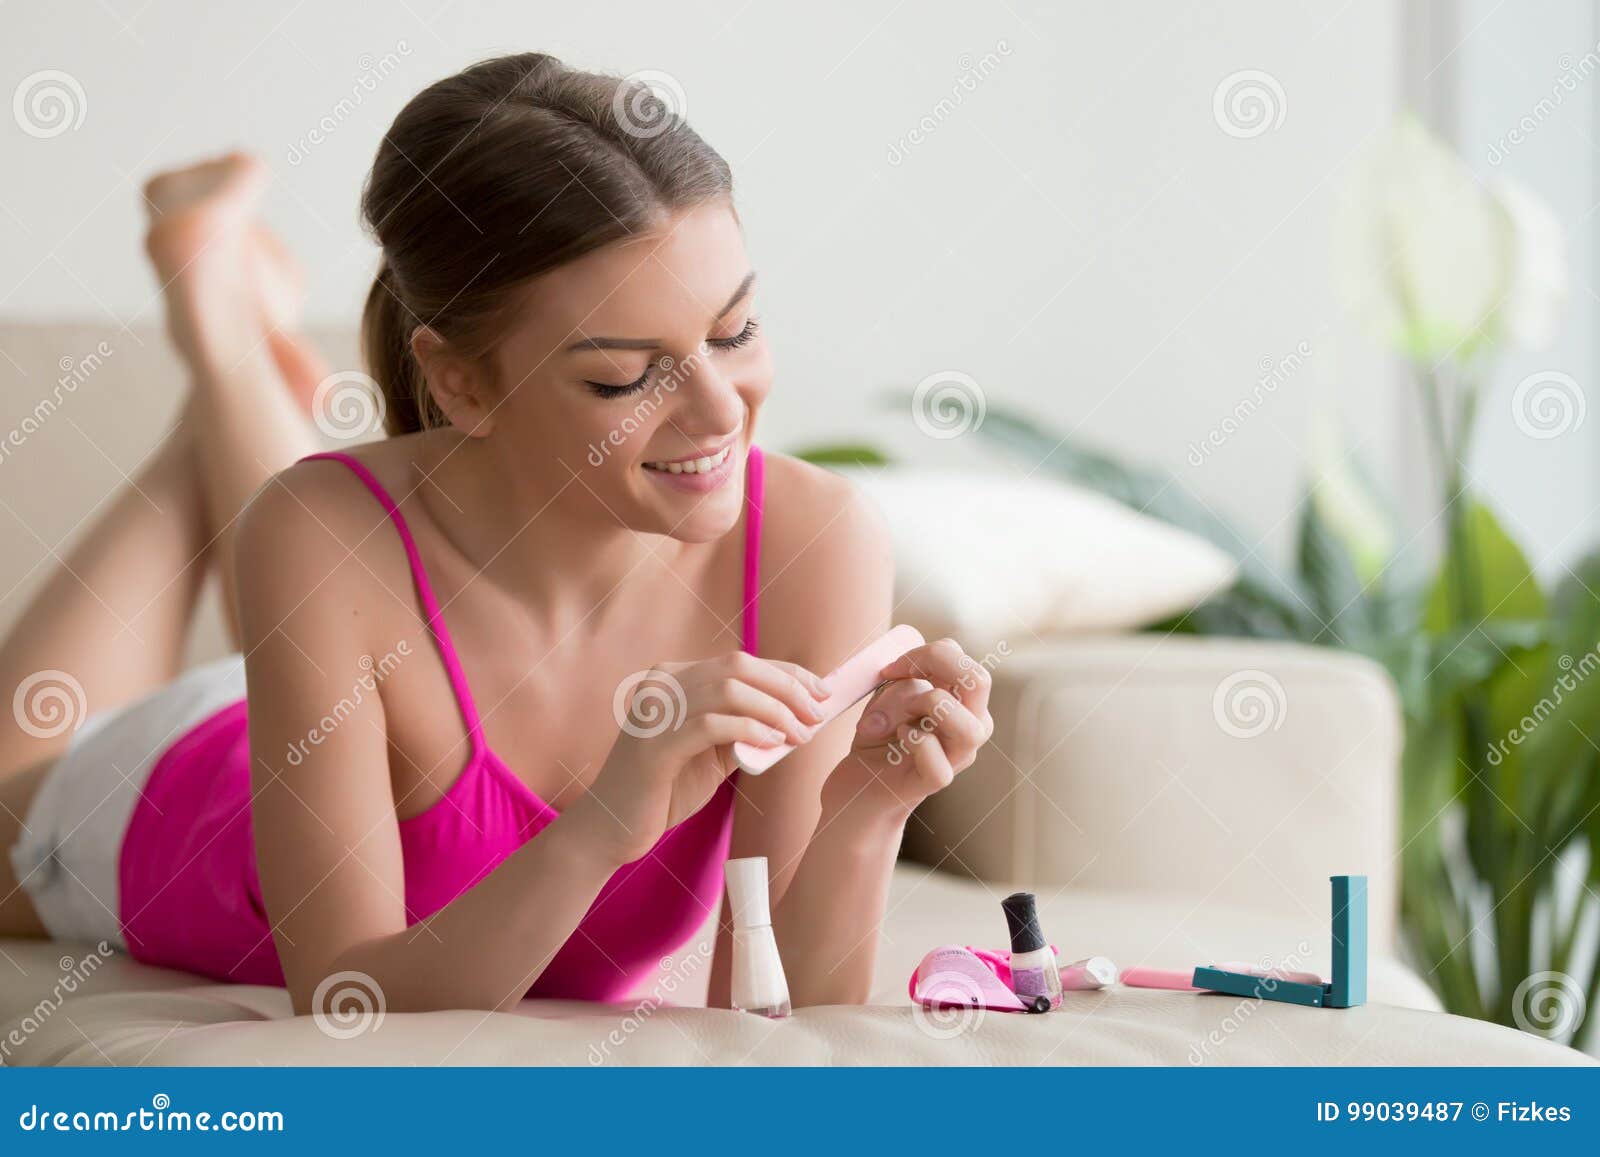 woman polishing nails with nail buffer at home